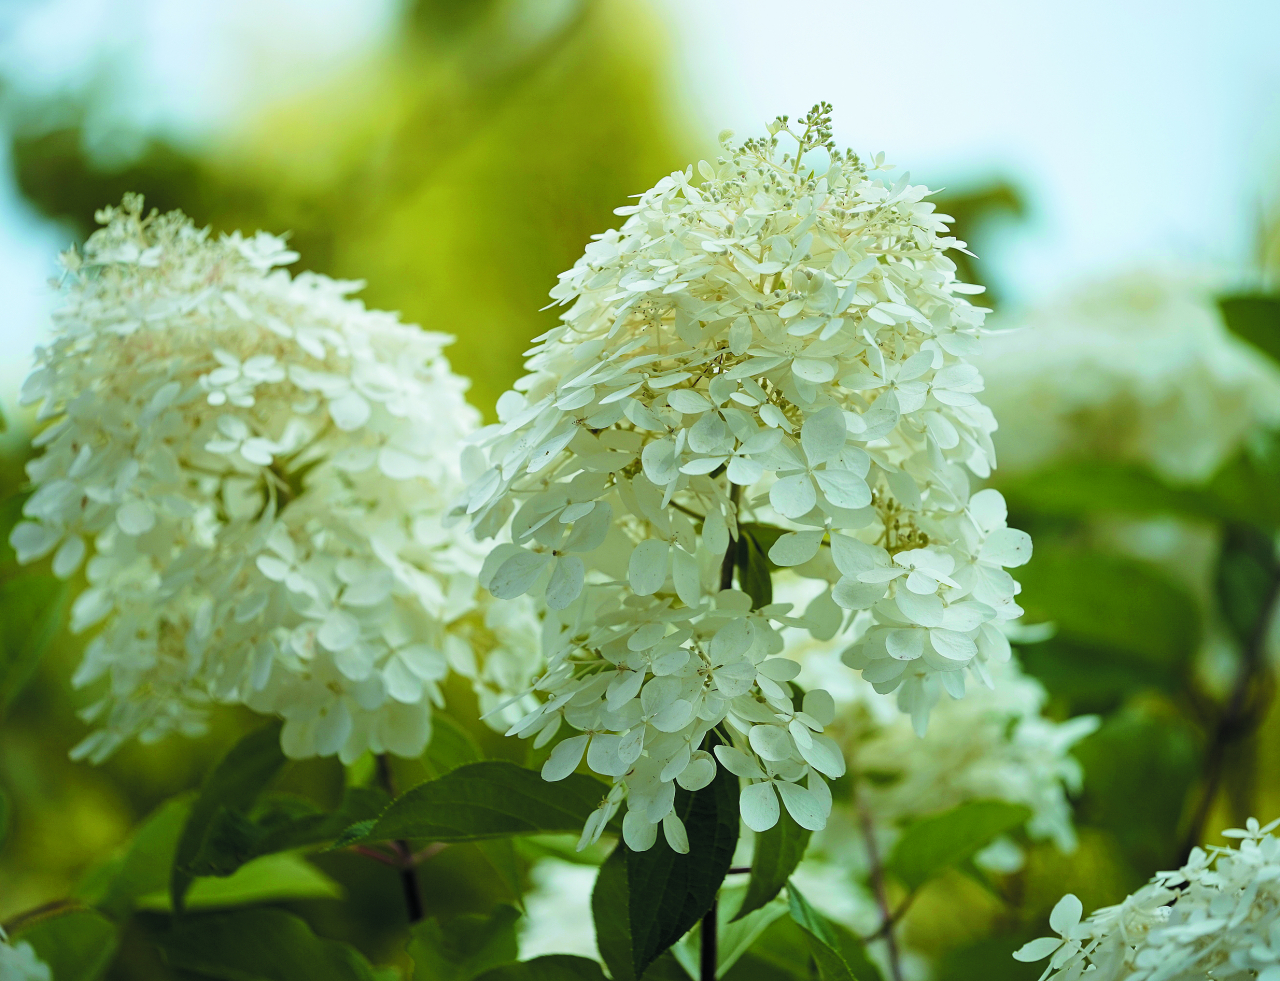  Phantom. Vislielākie ziedi no skarainajām hortenzijām. Sāk ziedēt vasaras vidū krēmīgi baltās galotnes skarās, vēlāk ziedi krāsojas gaiši rozā. Toņa intensitāte atkarīga no augsnes skābuma. Krūma augums var sasniegt 2–3 m.